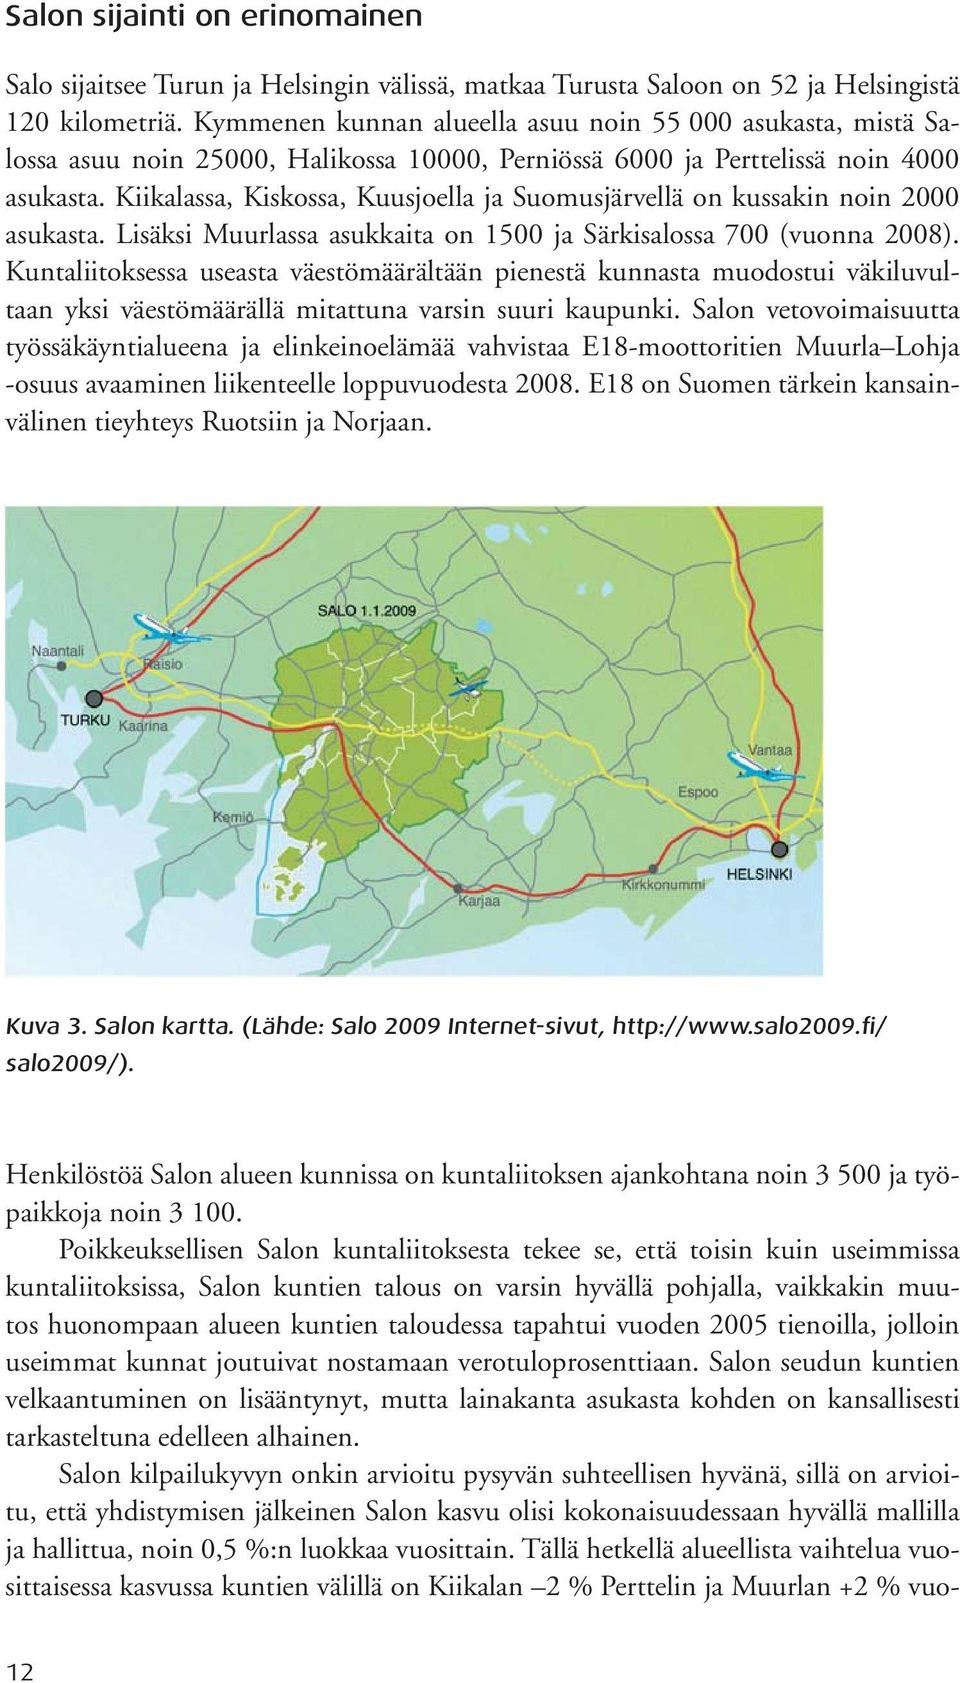 Kiikalassa, Kiskossa, Kuusjoella ja Suomusjärvellä on kussakin noin 2000 asukasta. Lisäksi Muurlassa asukkaita on 1500 ja Särkisalossa 700 (vuonna 2008).